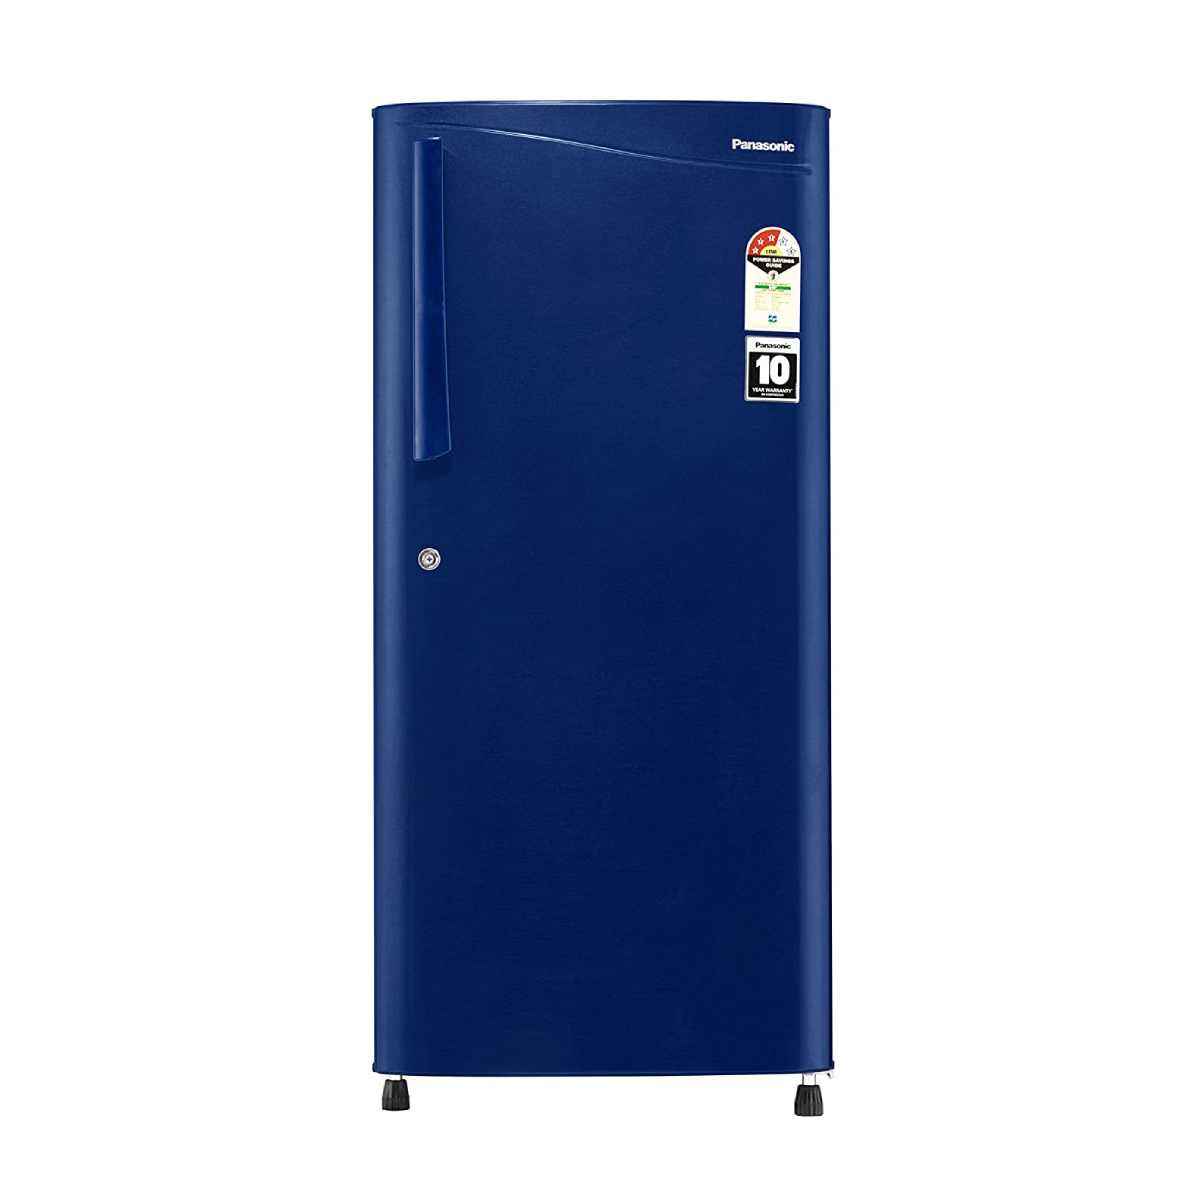 பேனாசோனிக் 194 L 3 Star Single Door Refrigerator (NR-A193VAX1) 